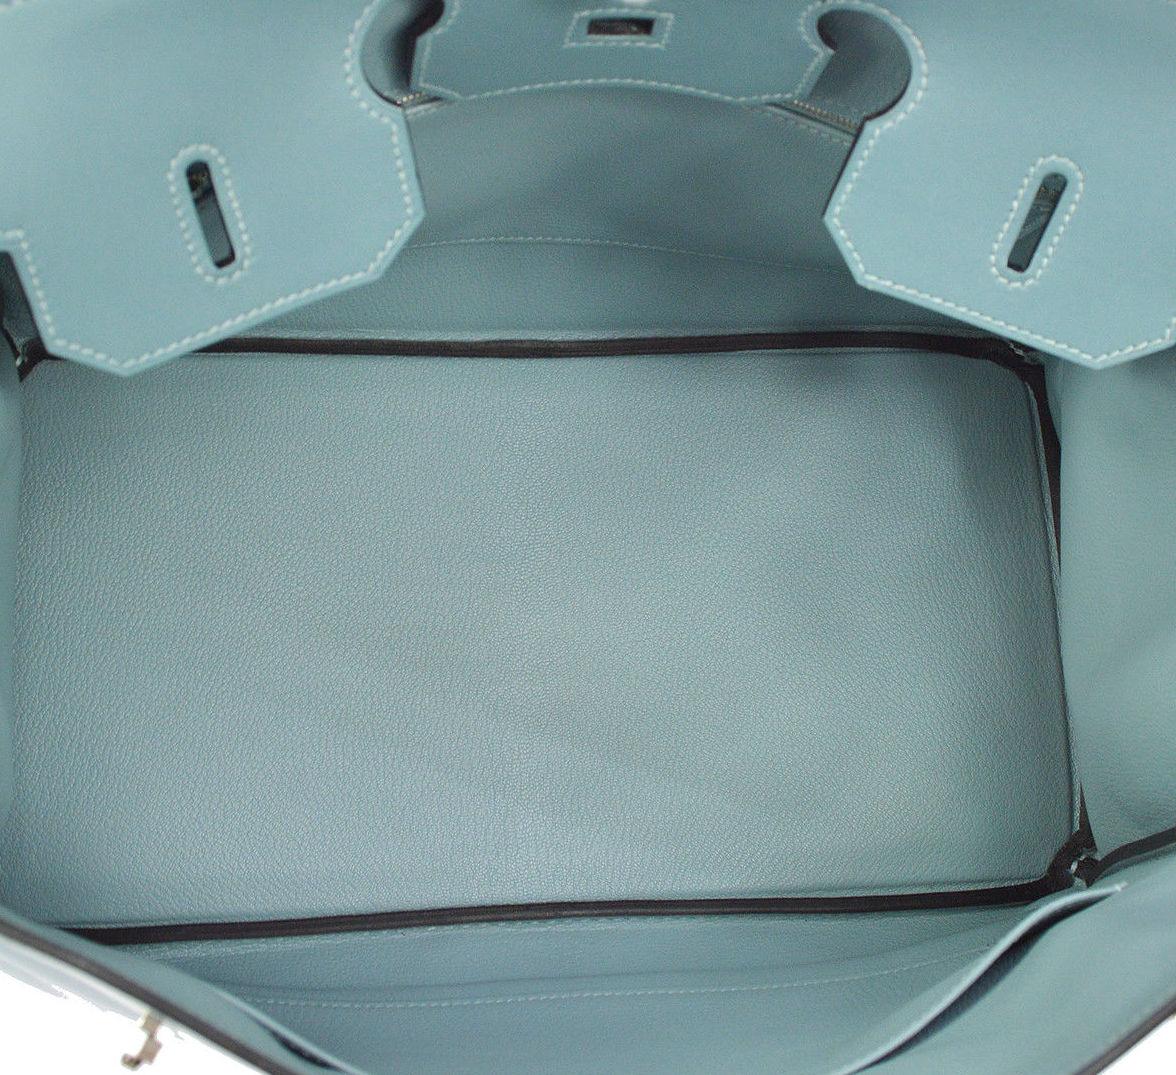 Hermes Birkin 35 Tiffany Blue Leather Top Handle Satchel Travel Shoulder Bag 2